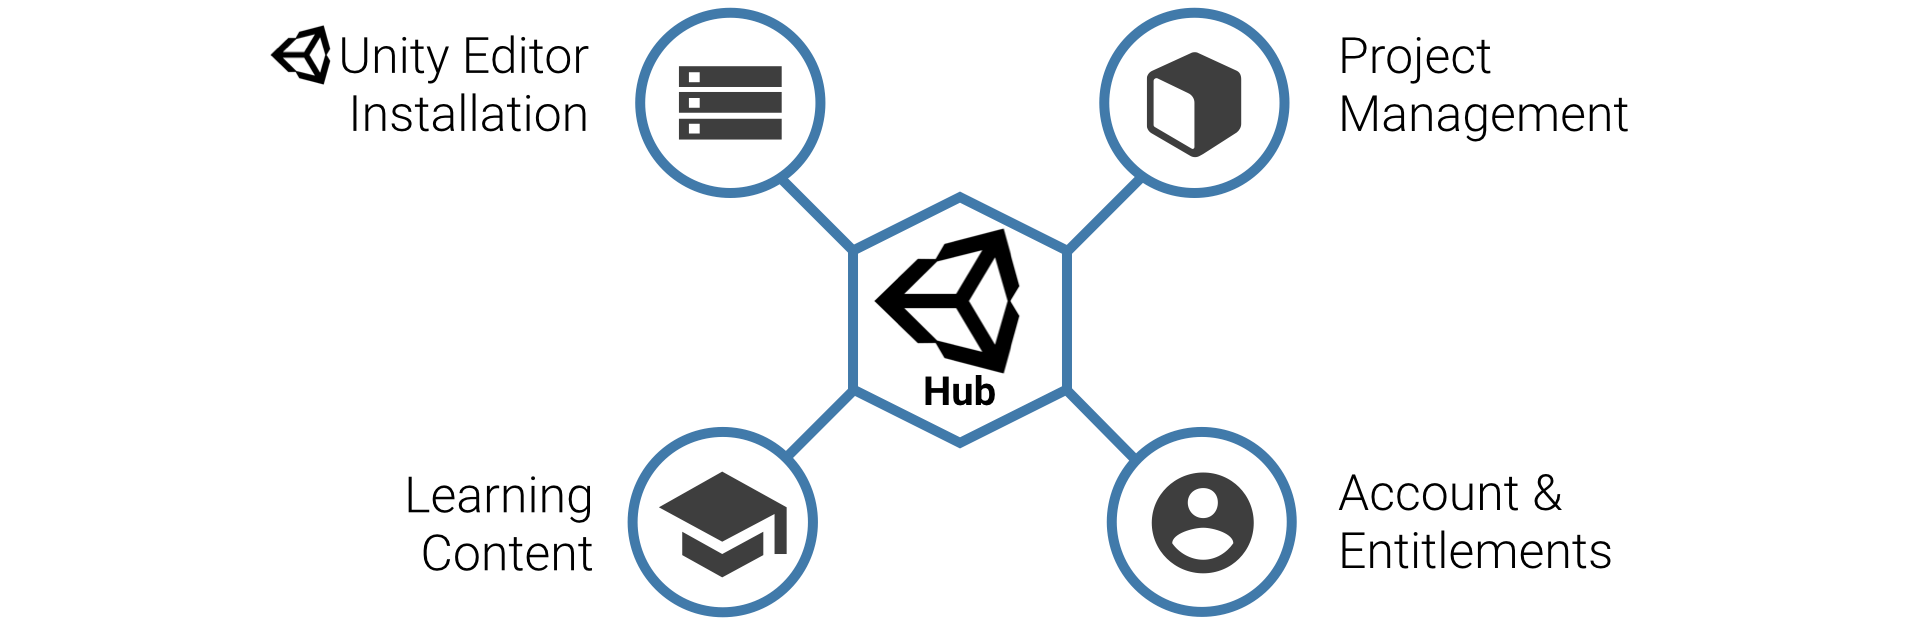 unity hub m1